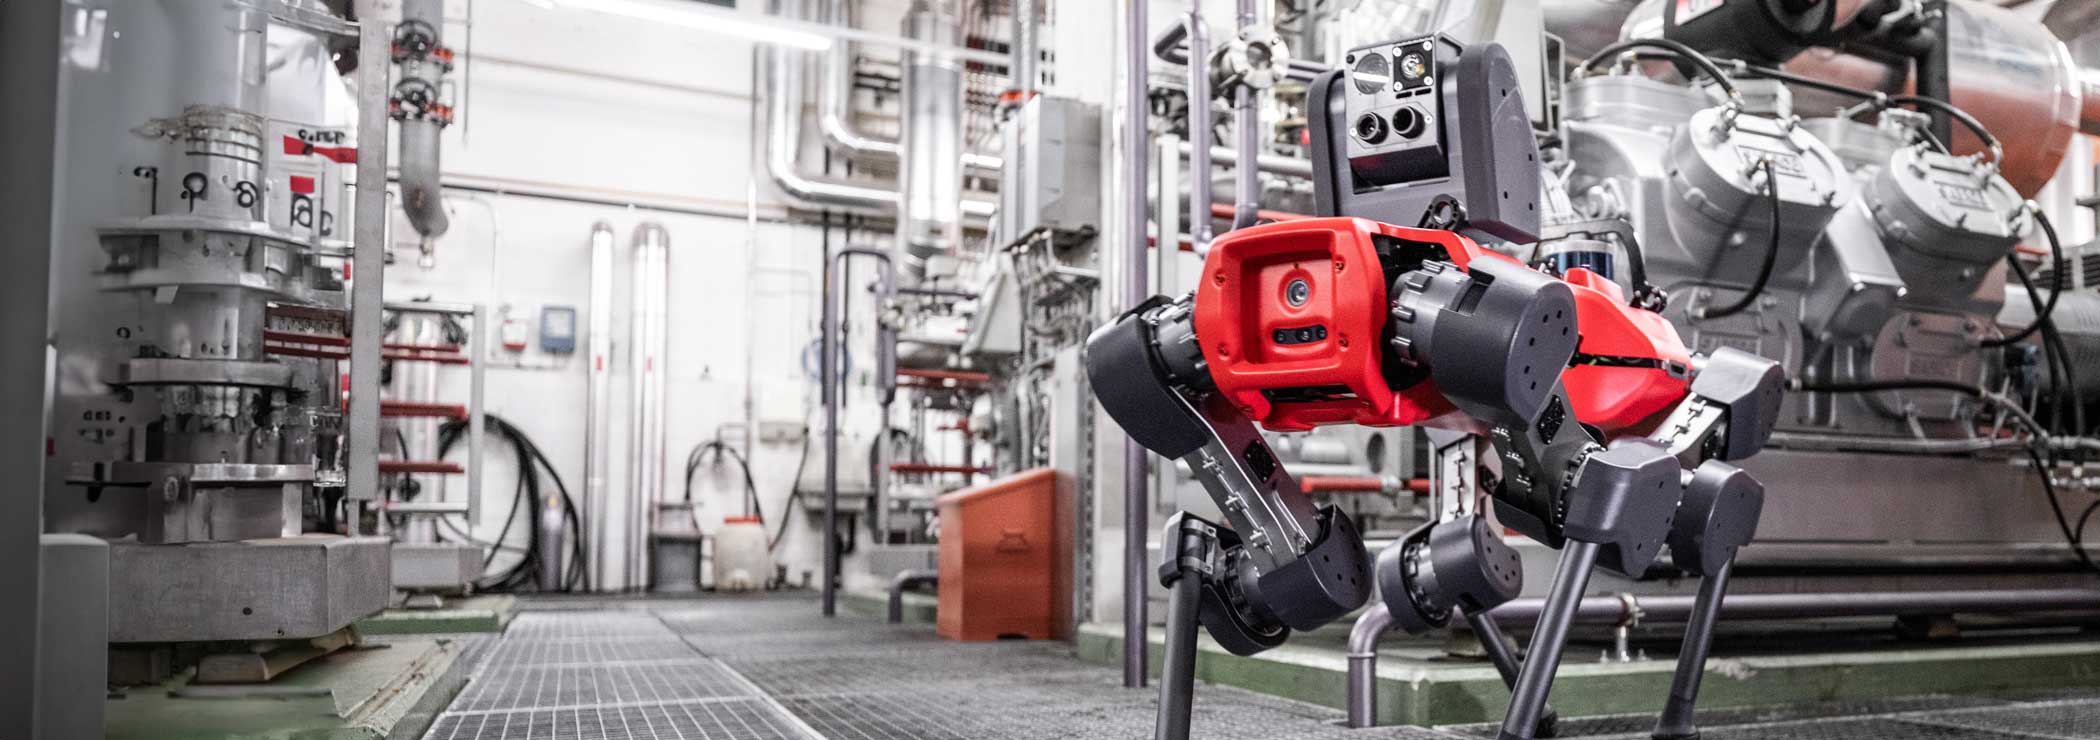 Vierbeiniger Roboter bei Inspektionsarbeiten in einer Industrieanlage